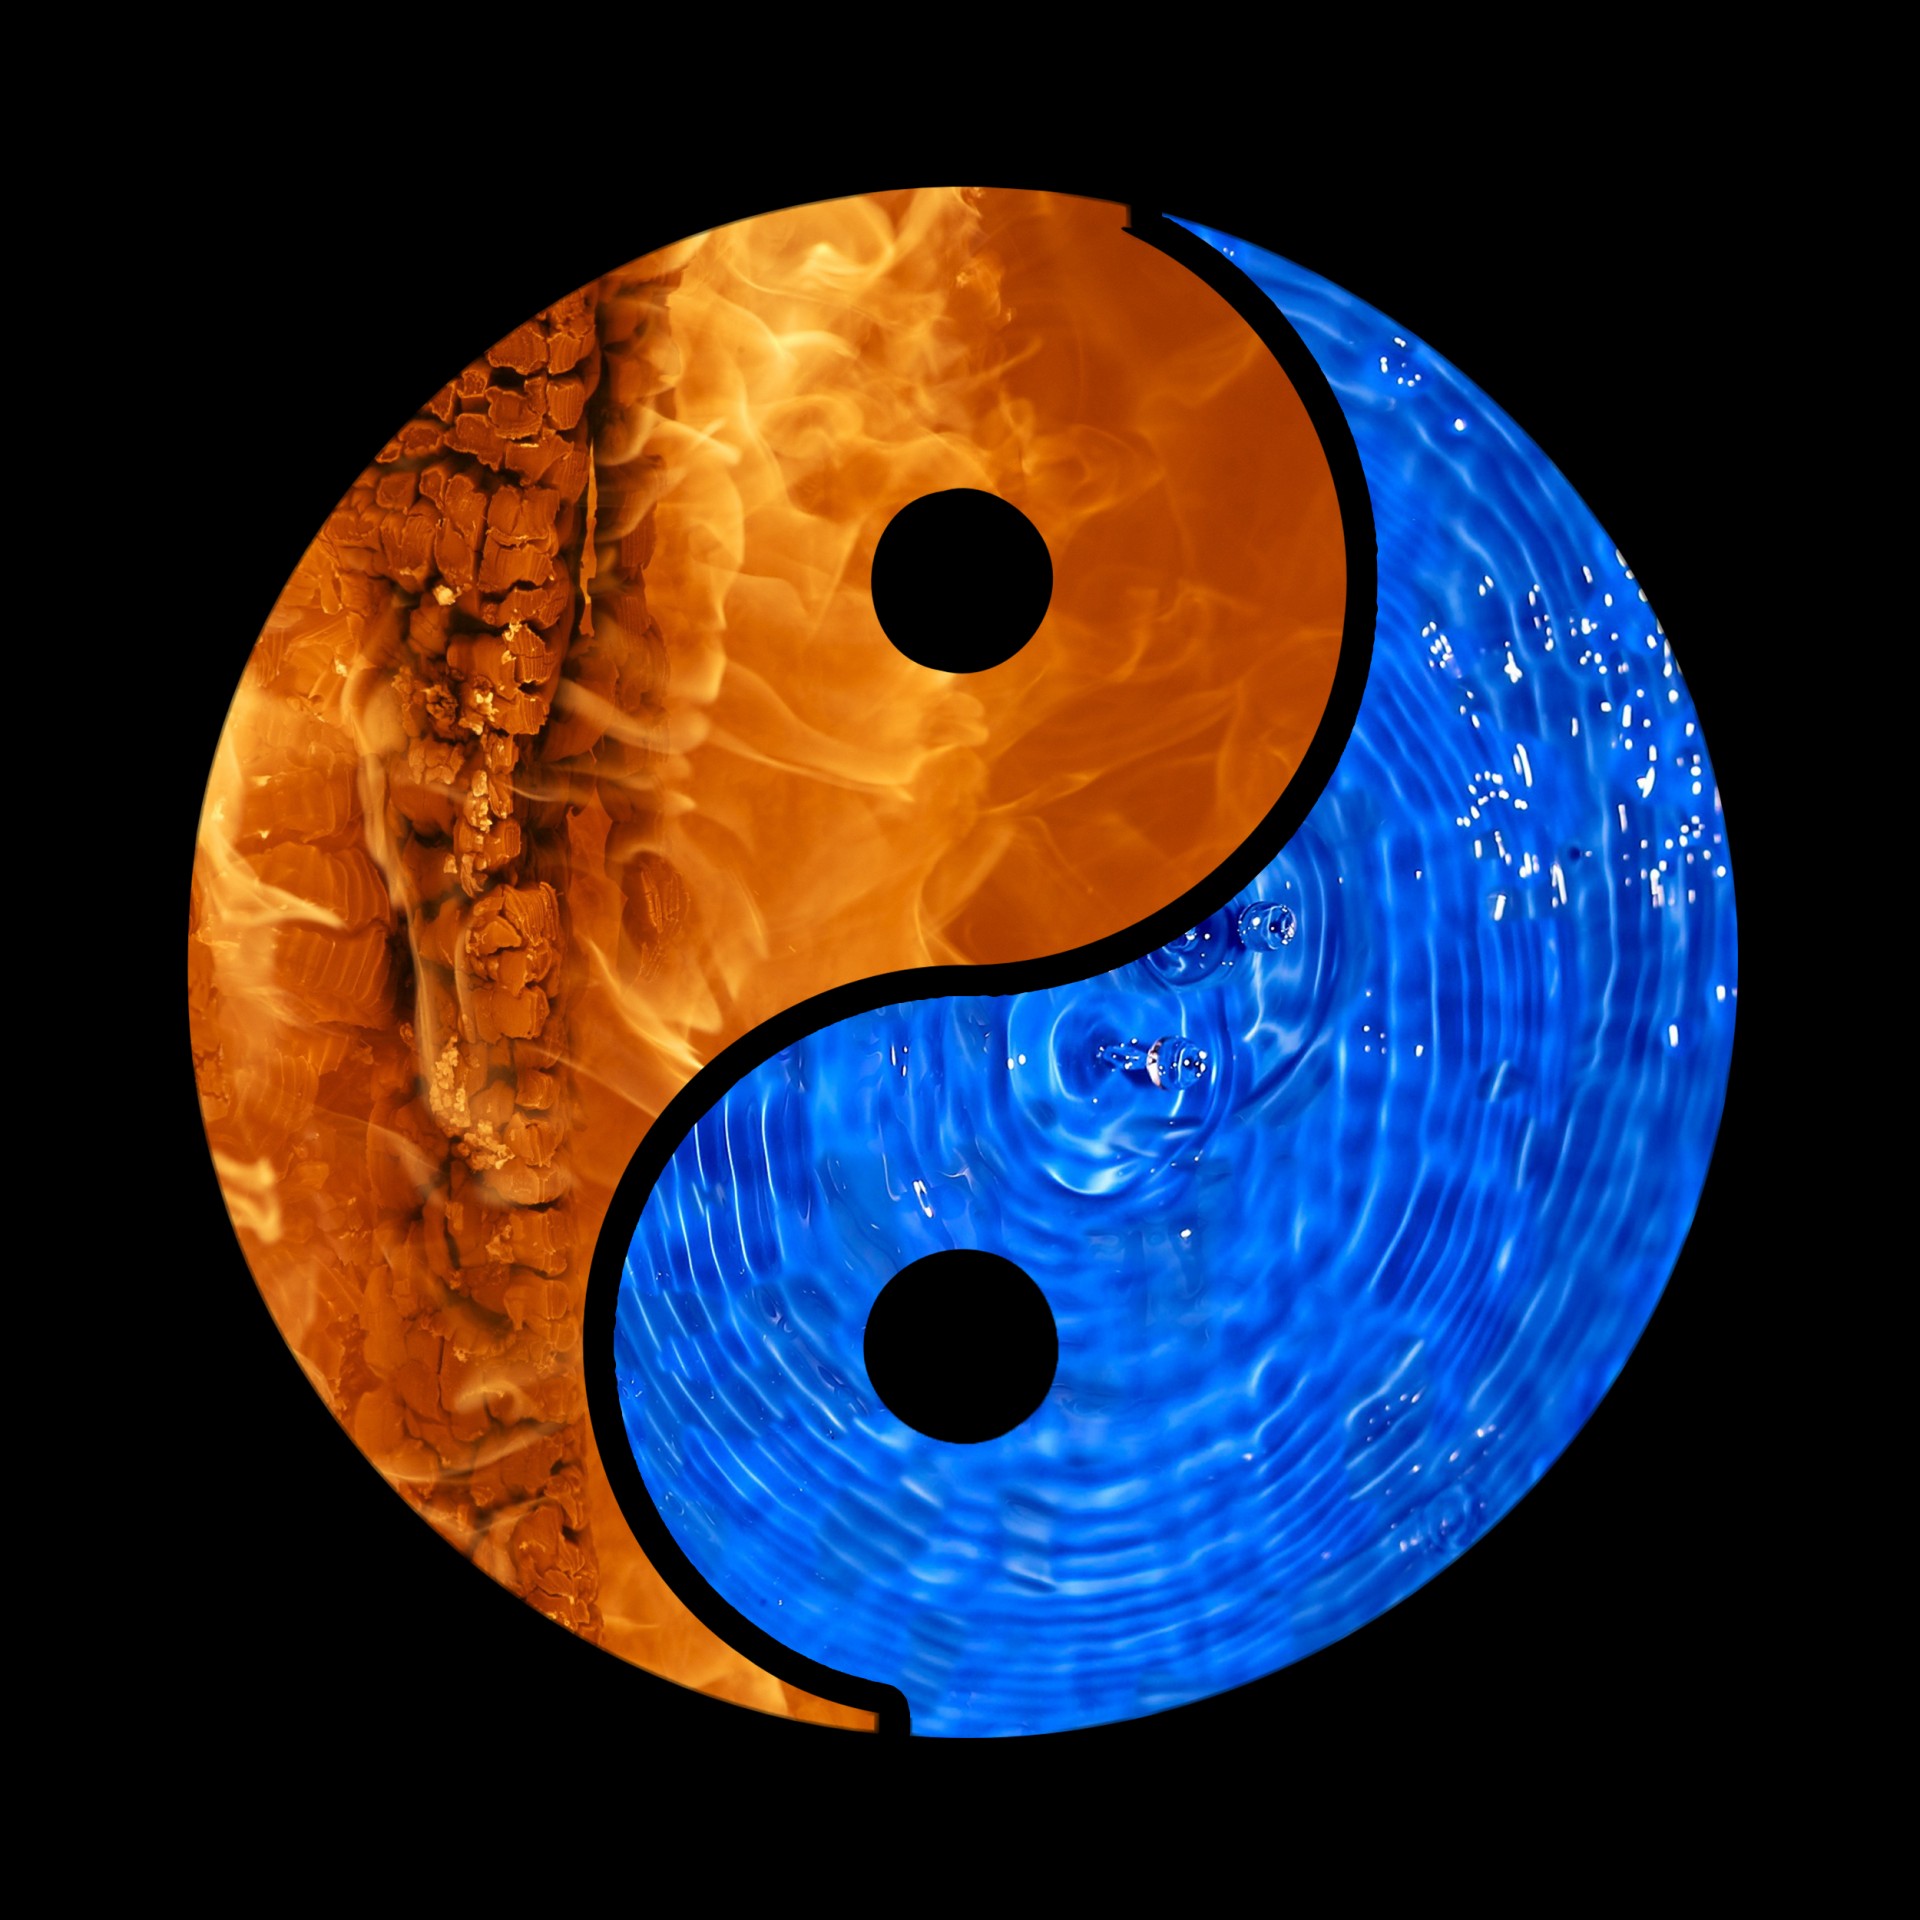 yin-yang-yin-yang-fire-water-free-image-from-needpix